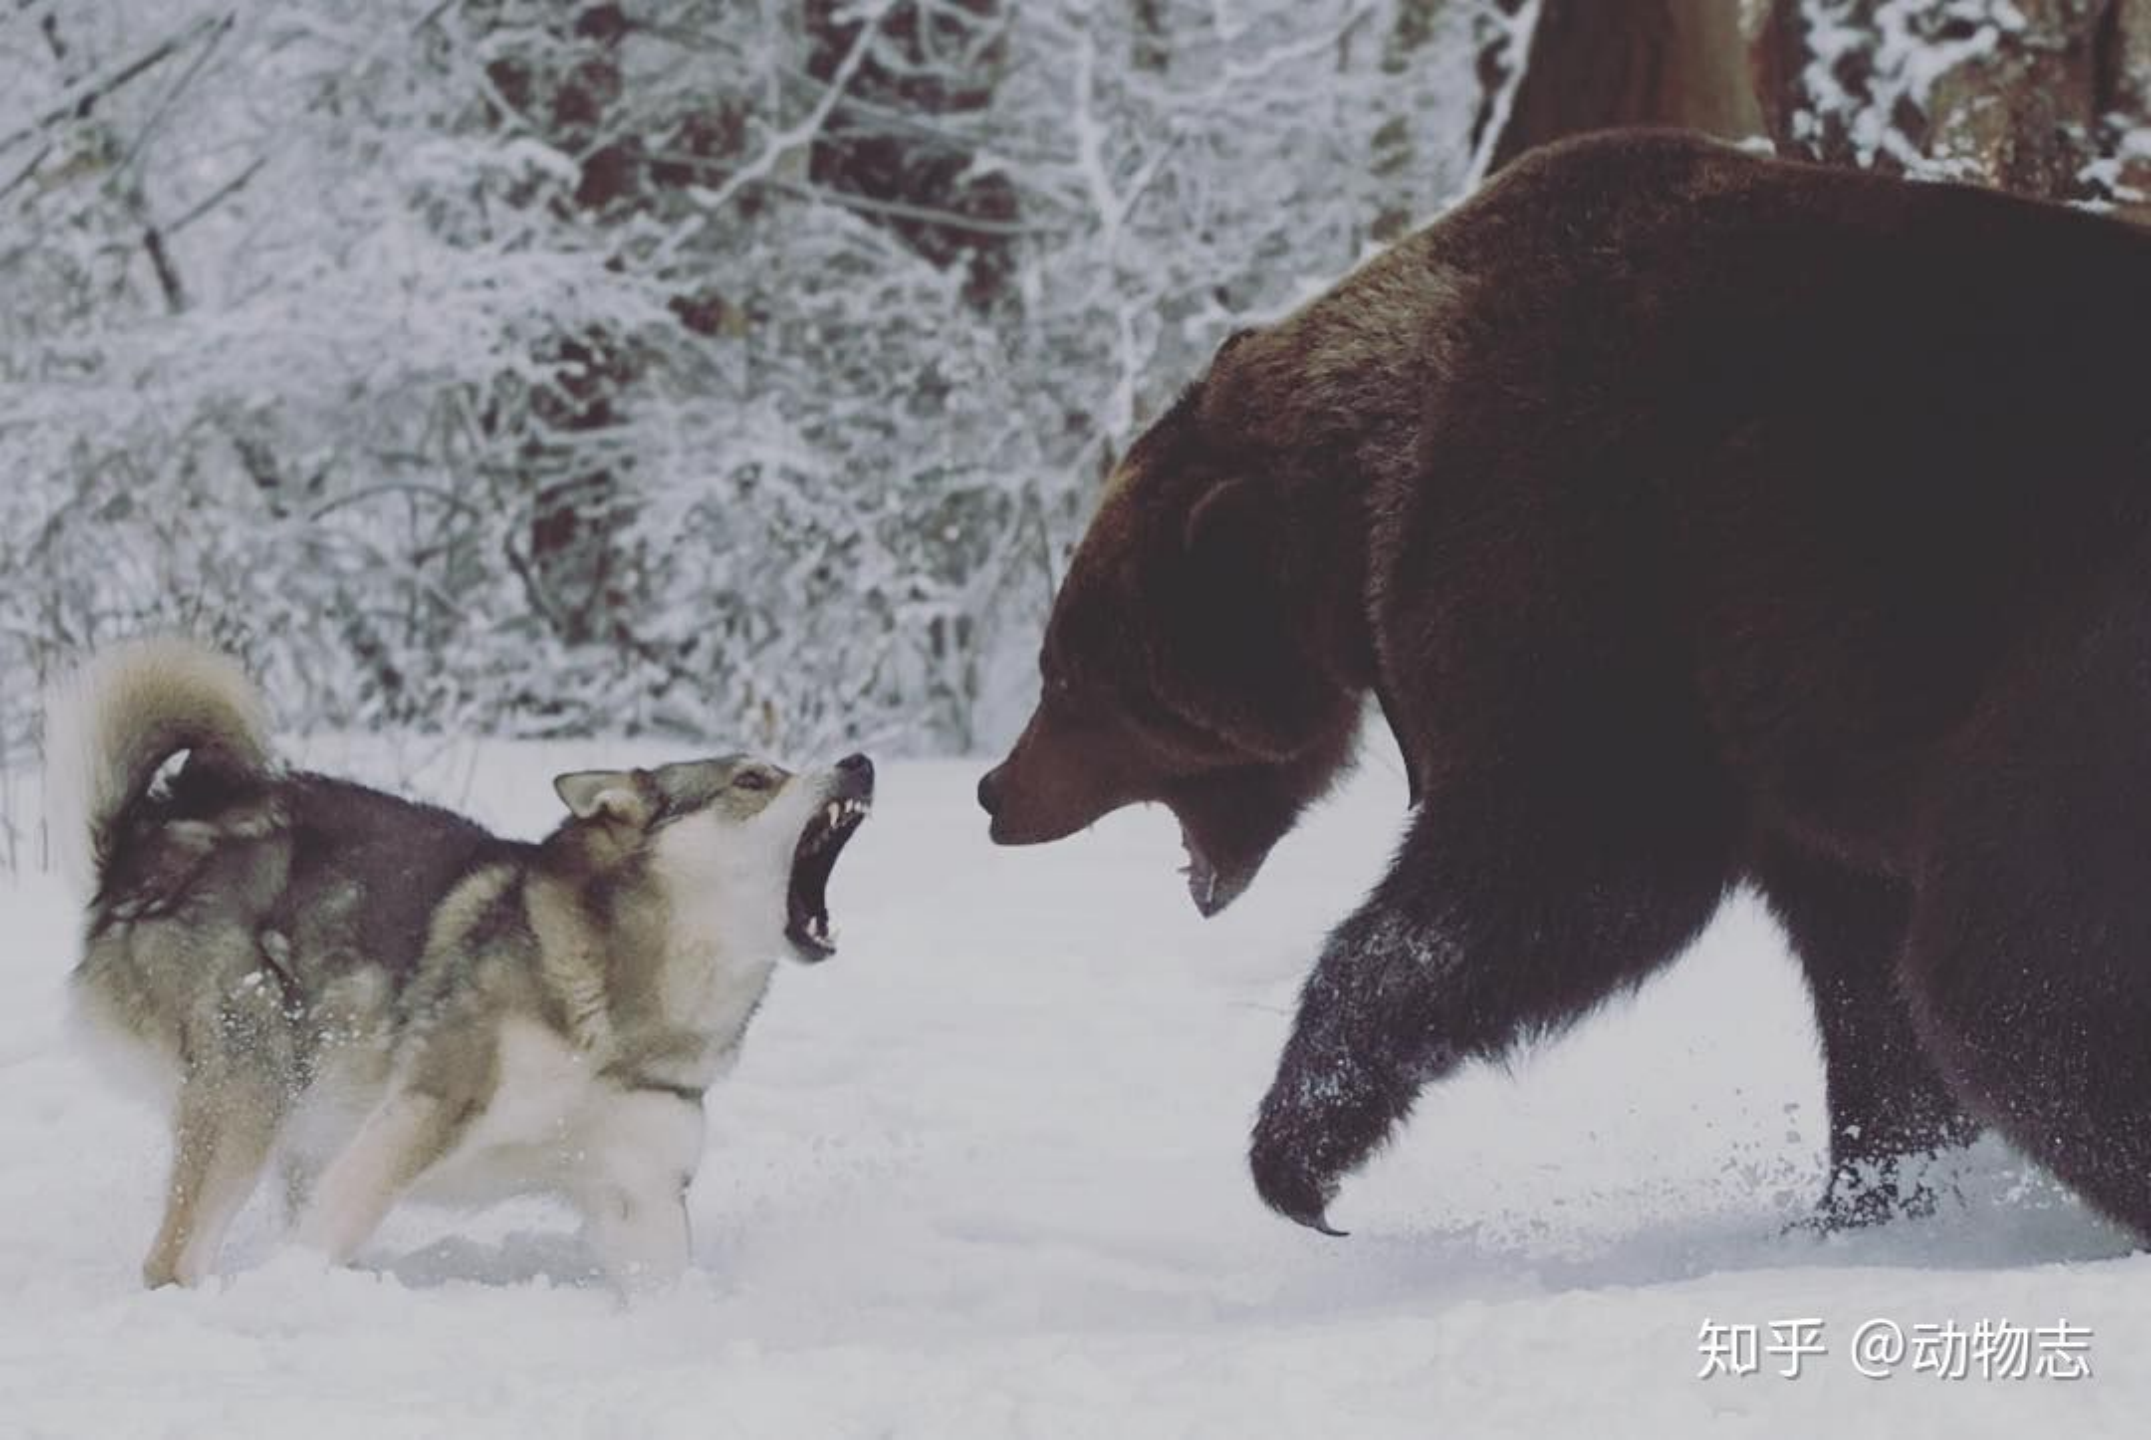 【北海道棕熊】棕熊袭击人行为实验